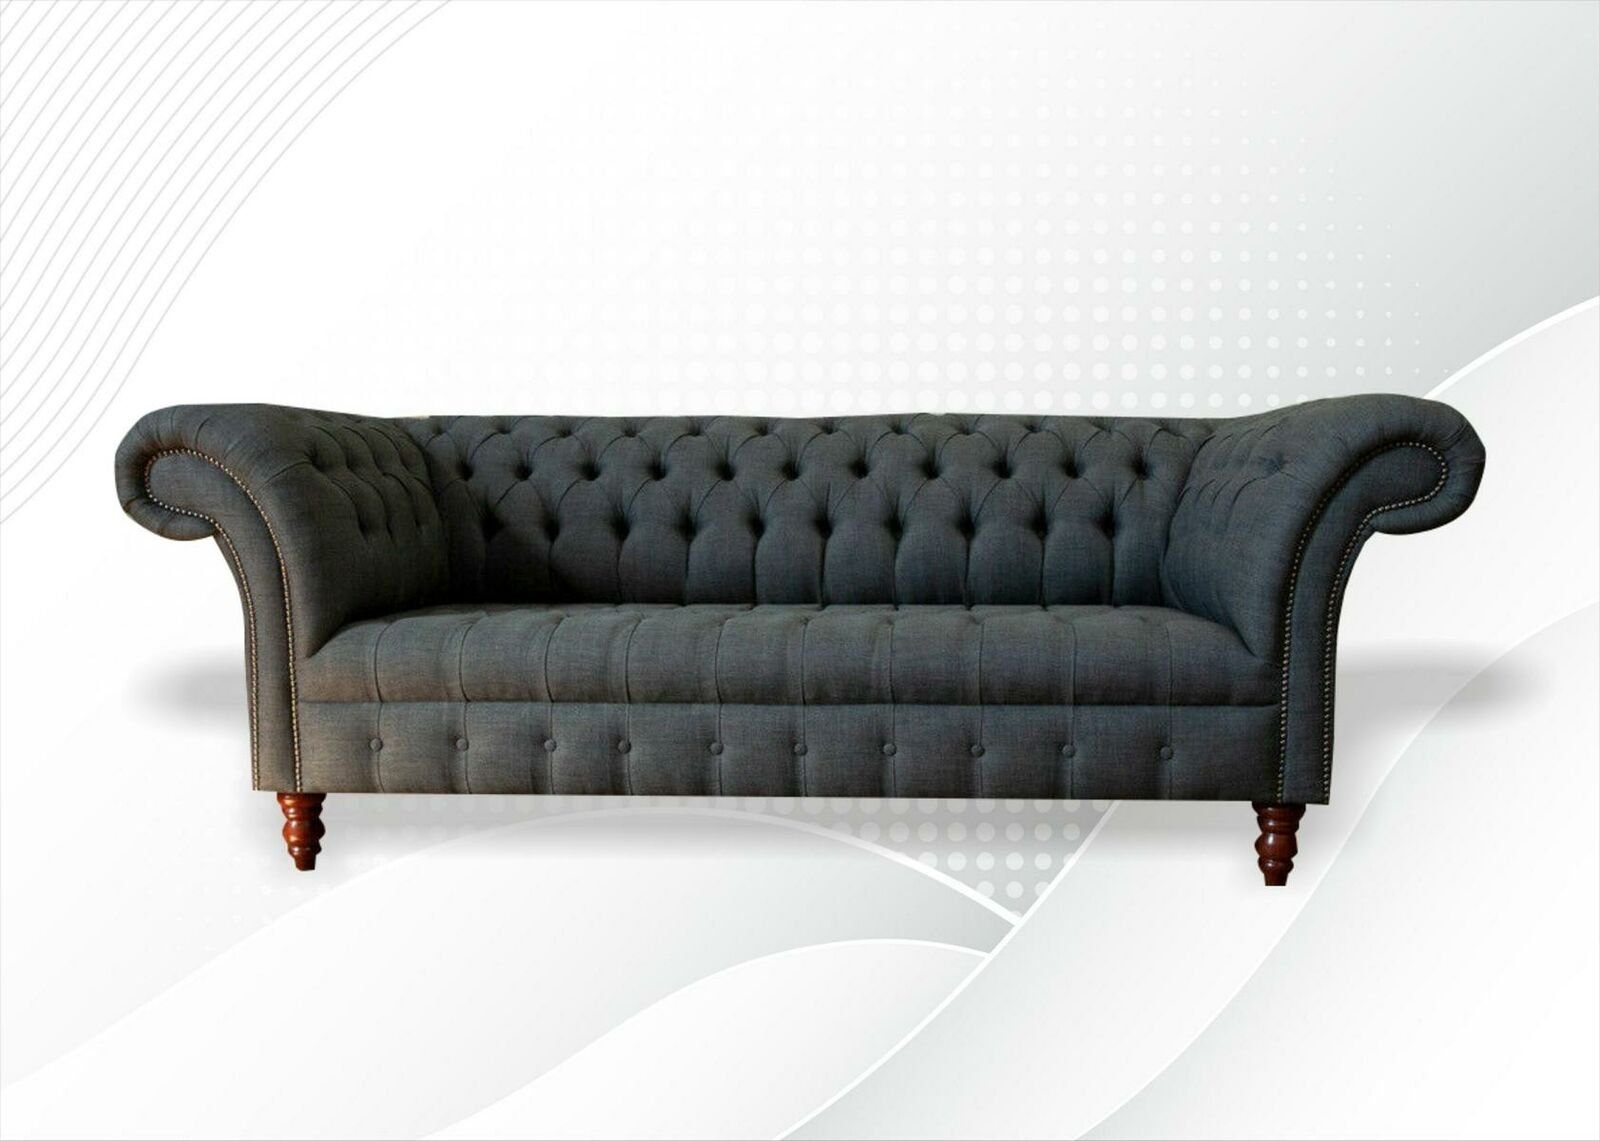 Textil Chesterfield 3 big Möbel Wohnzimmer Couchen Sofa Graue Sitzer Modern JVmoebel xxl Chesterfield-Sofa,